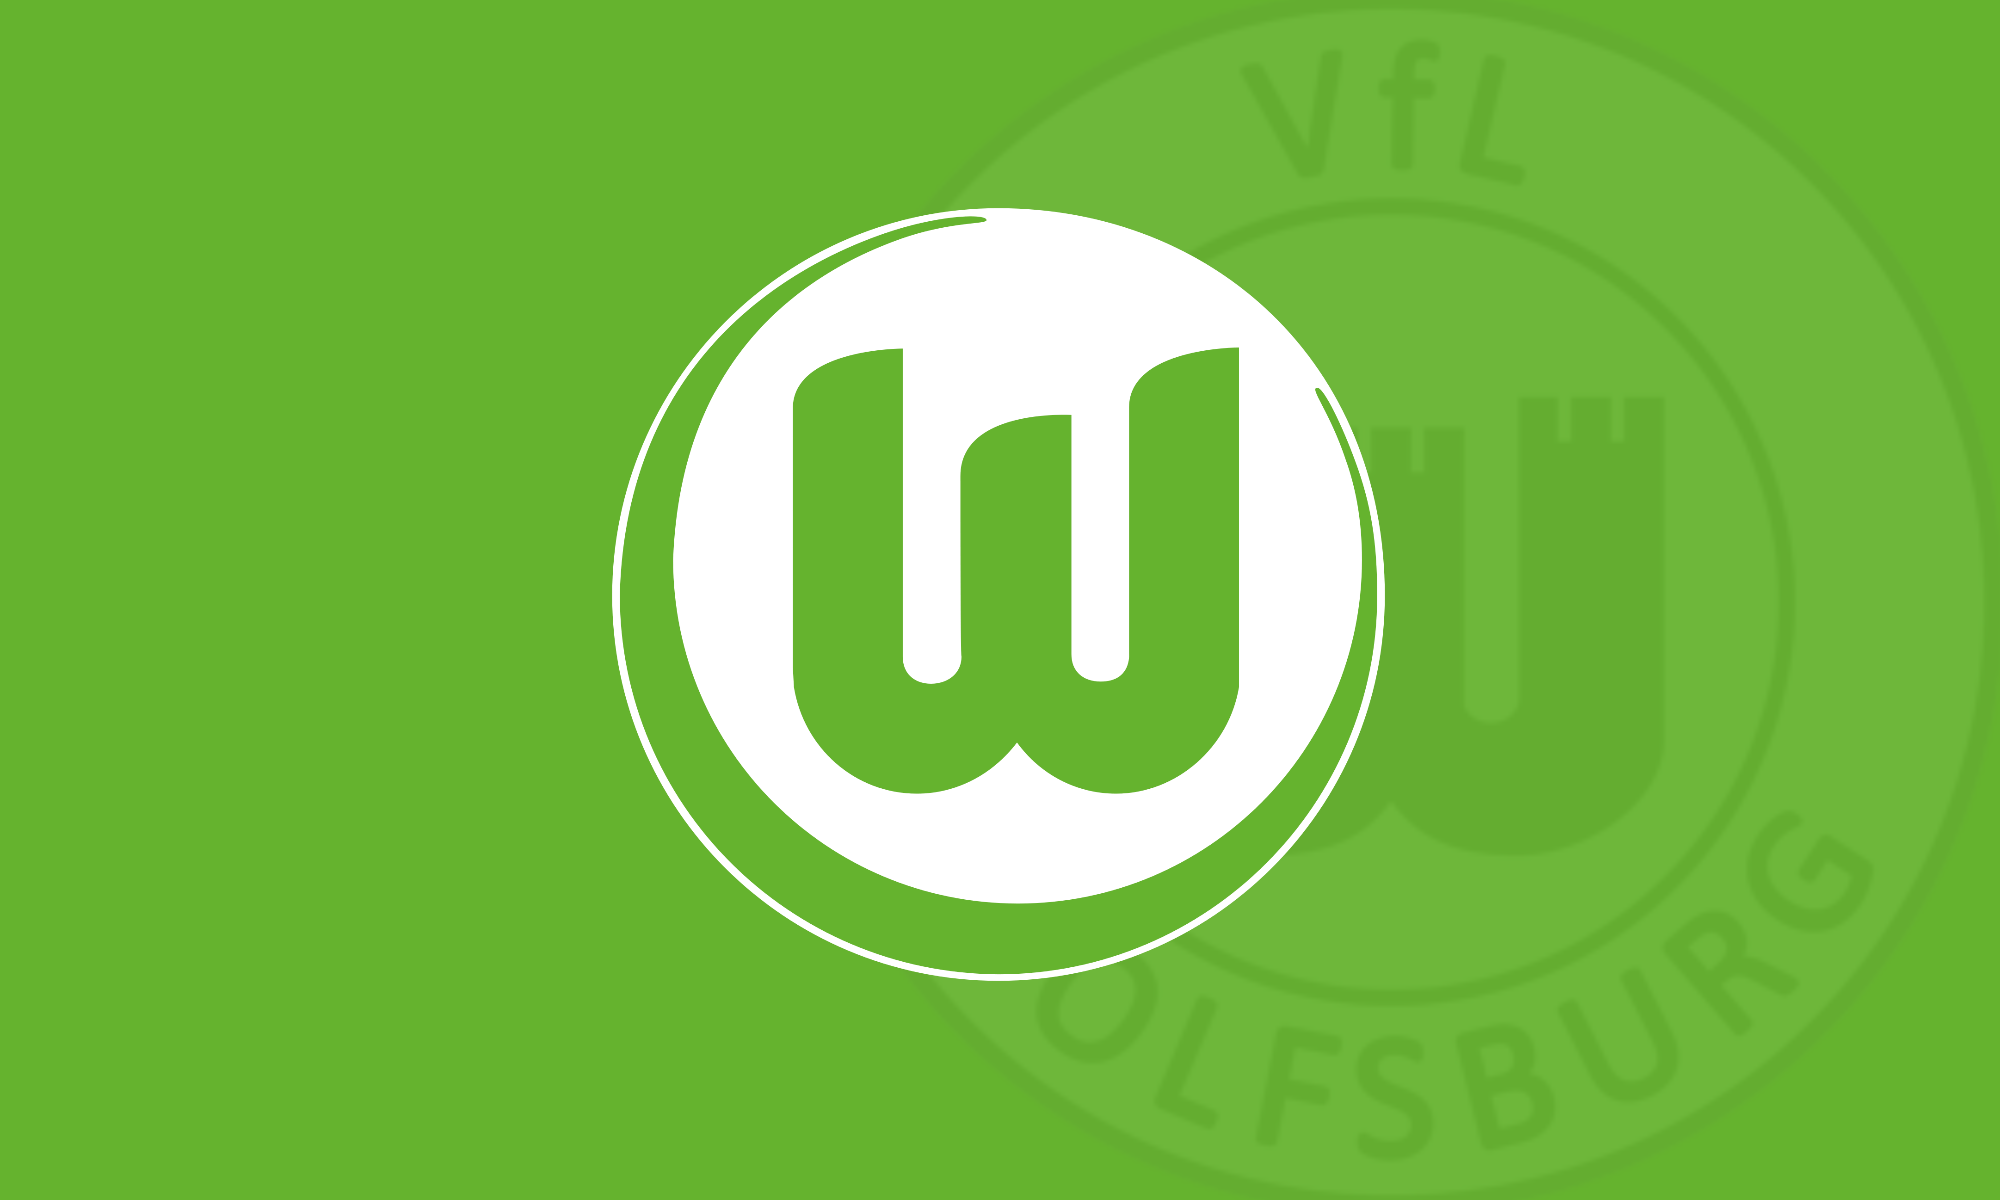 VfL Wolfsburg wallpaper including retro badge [OC]